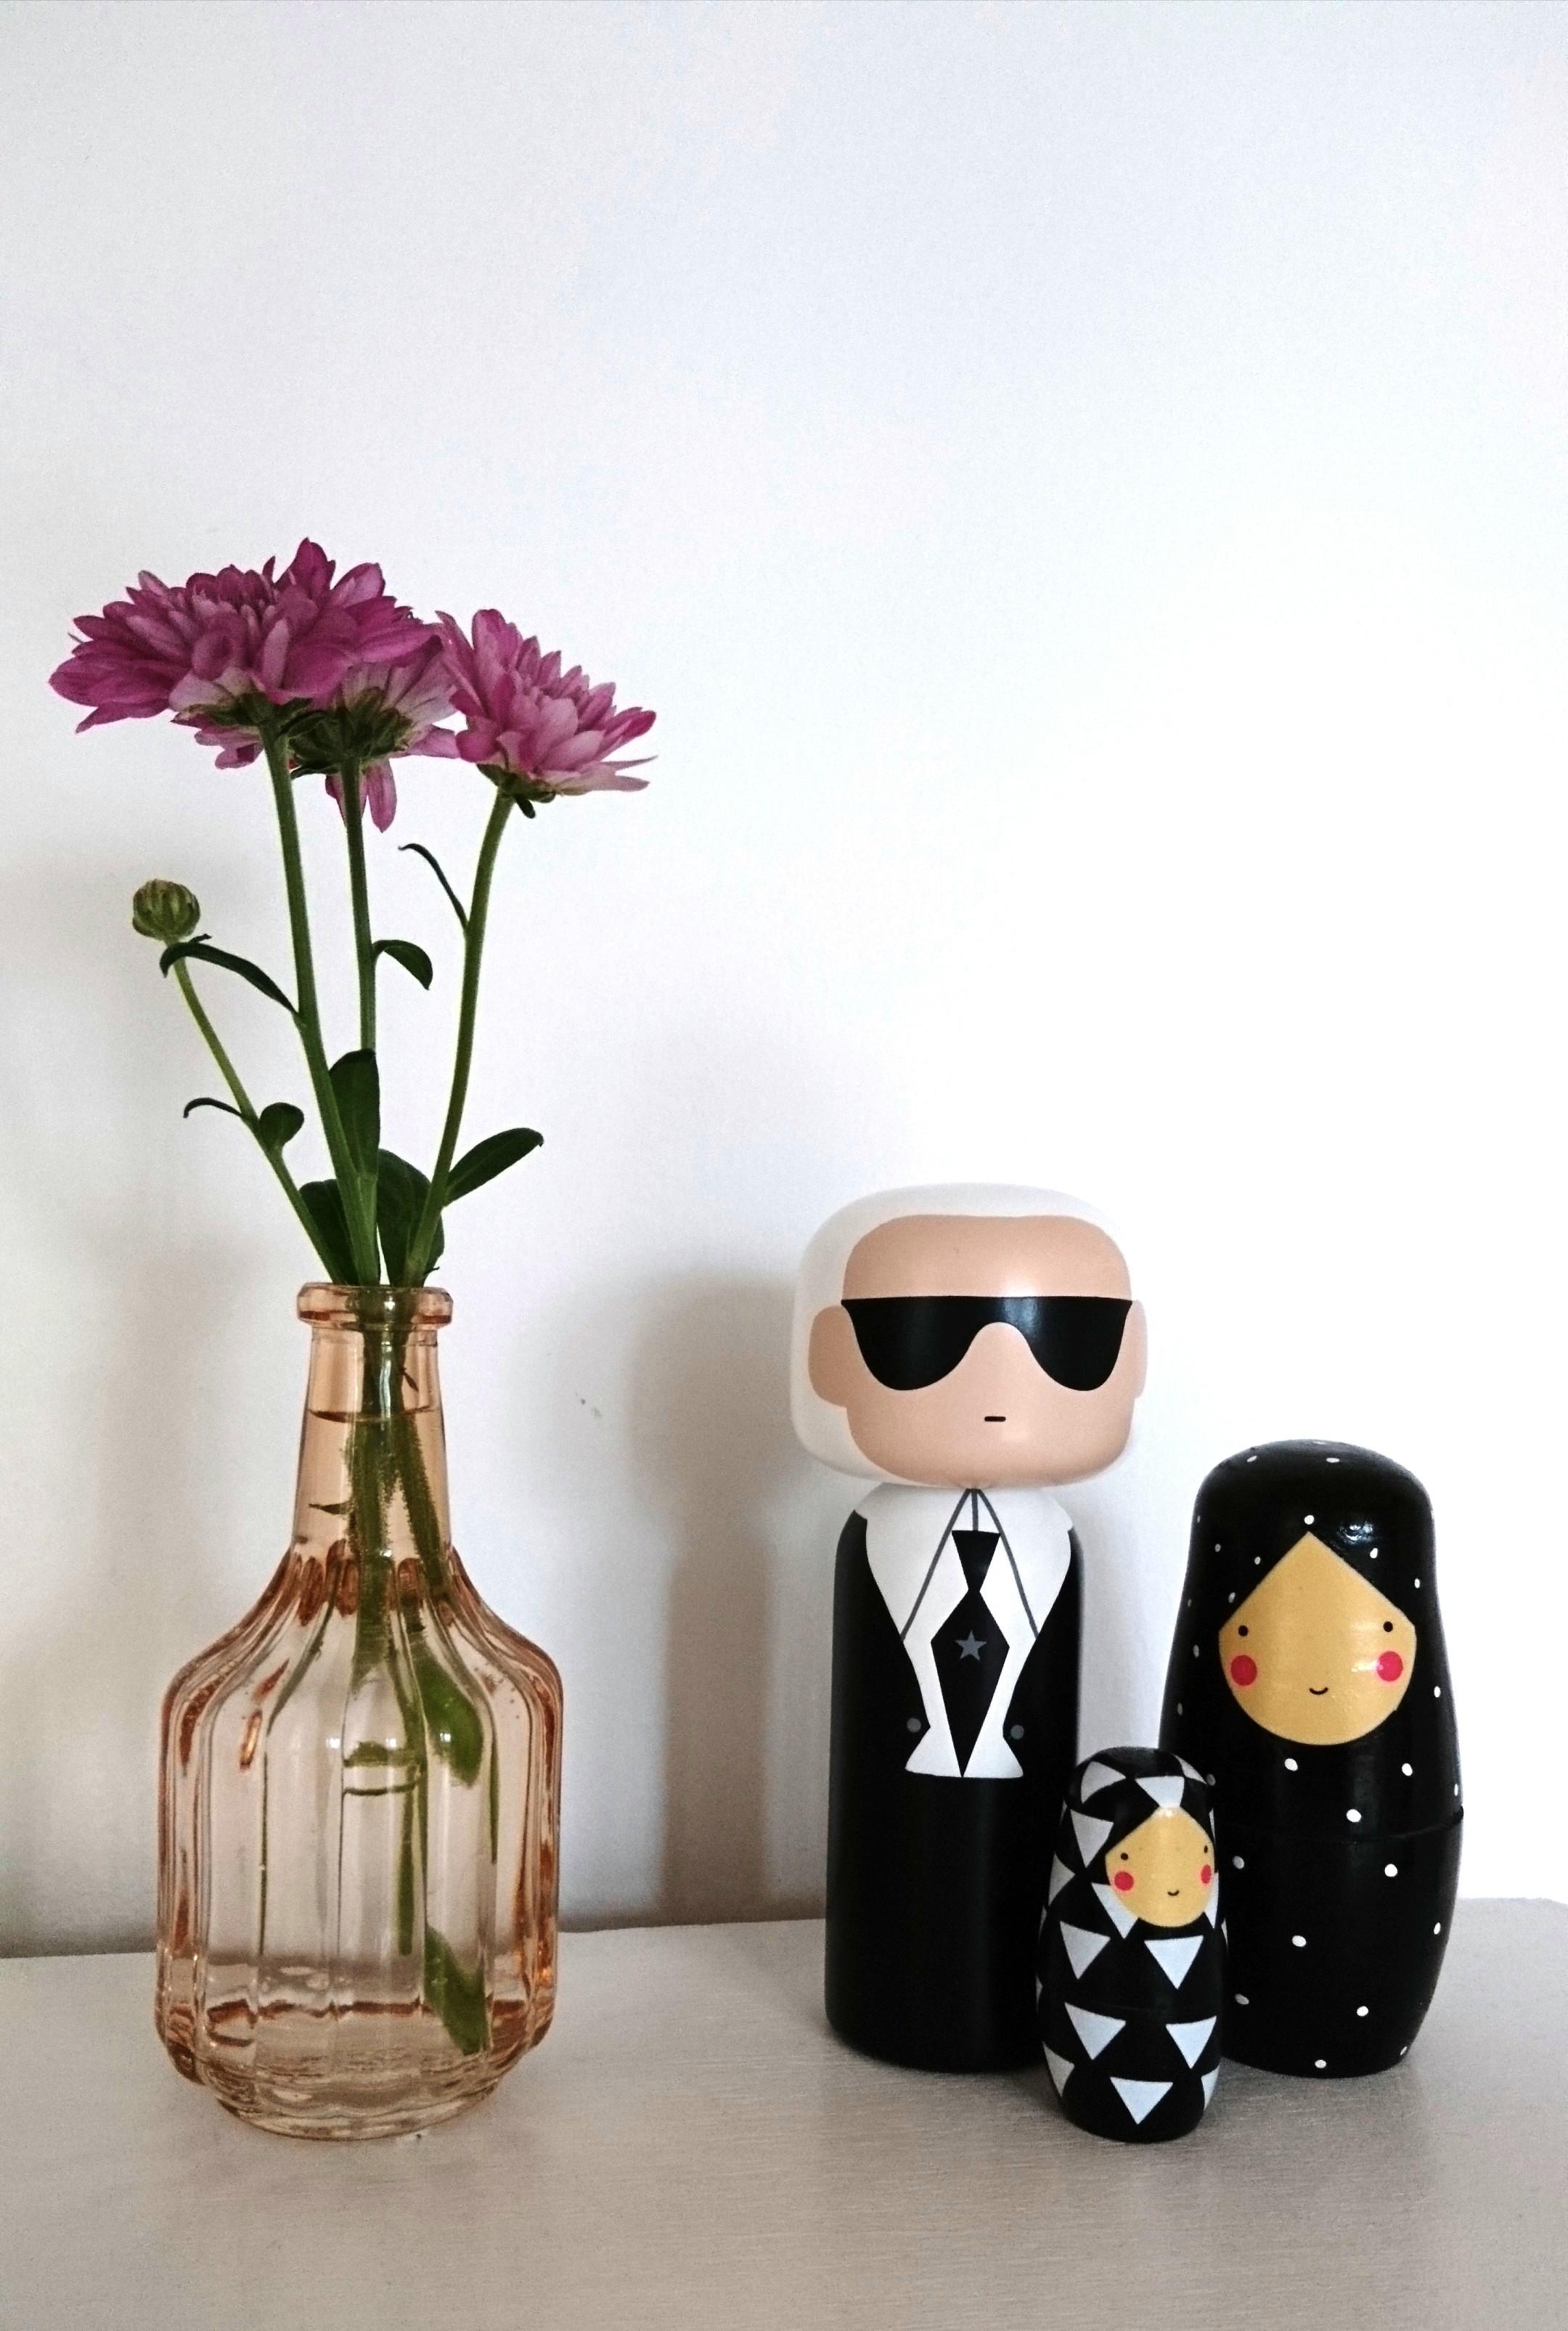 Patchwork mit #karl #Lagerfeld 
#living #holzfigur #luciekaas #Blumen #deko #vase 💕